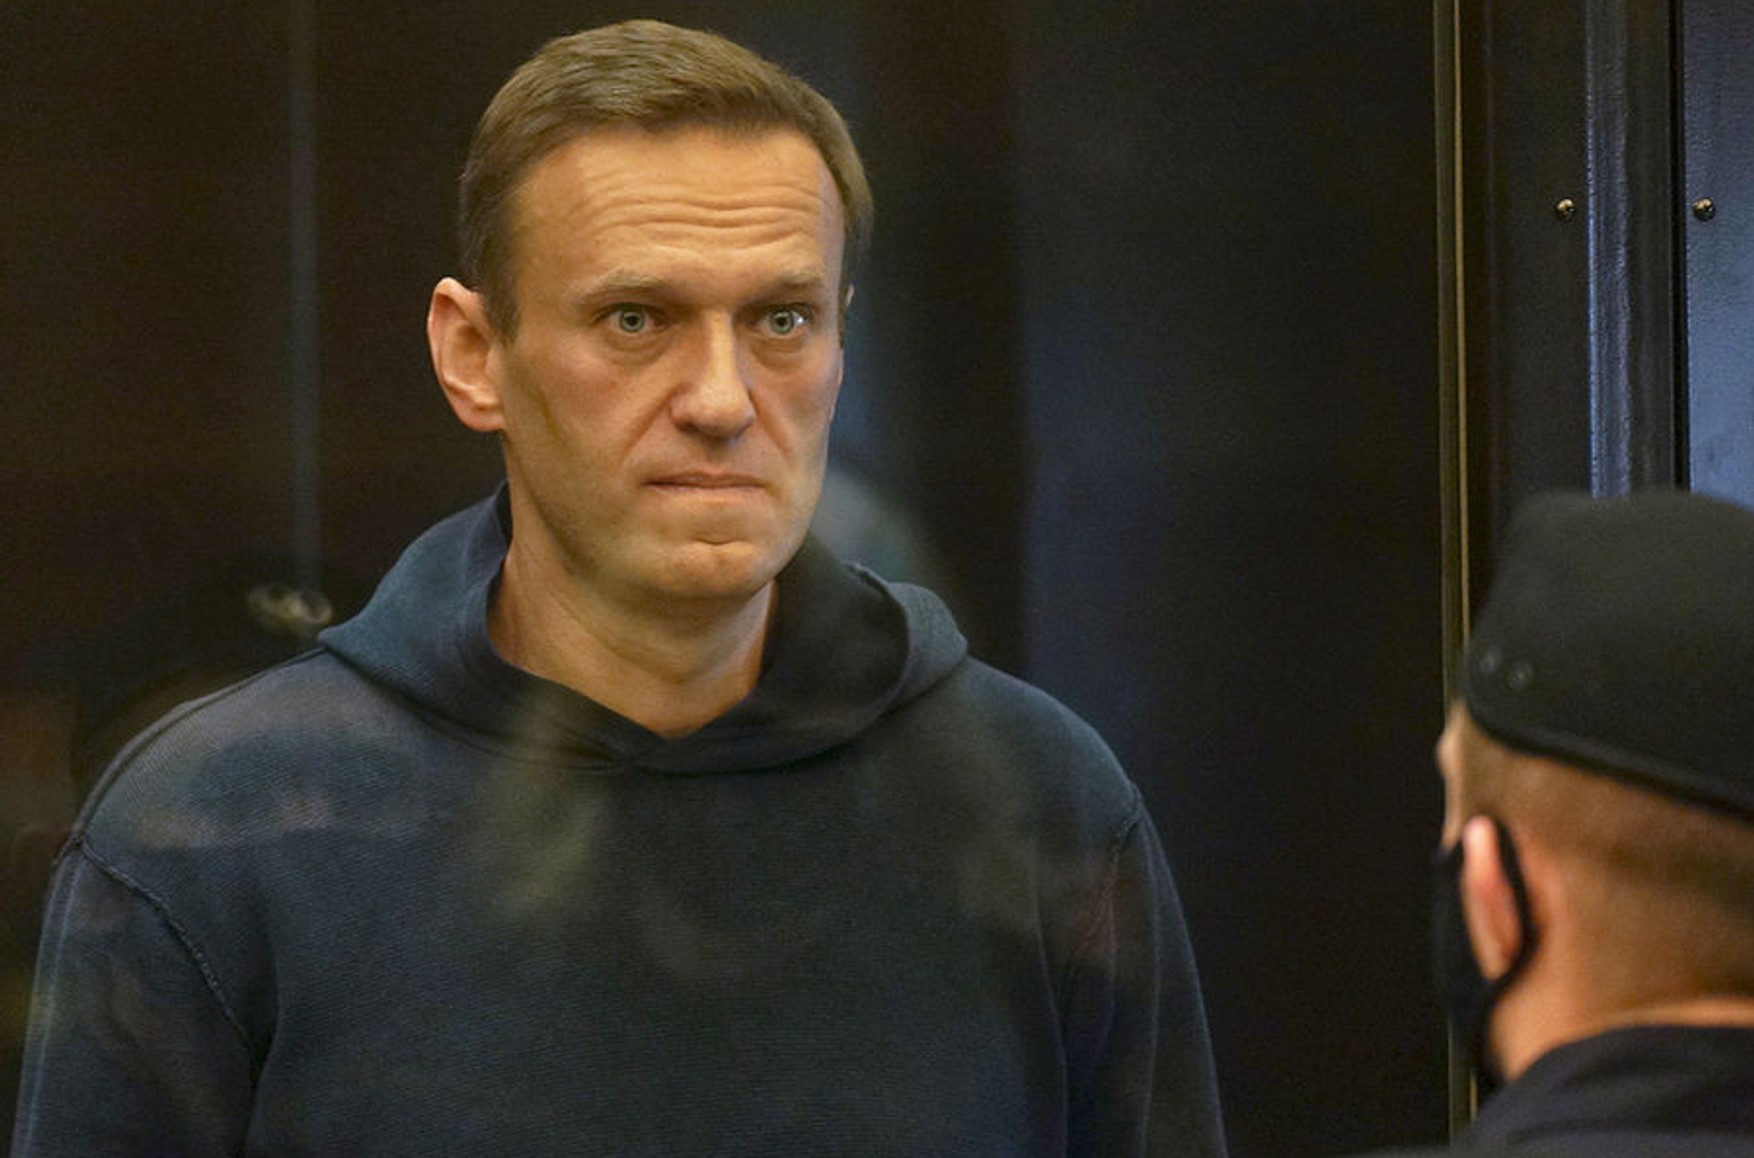 Мосгорсуд оставил в силе приговор Навальному по делу о мошенничестве и неуважении к суду. Теперь его переведут в колонию строгого режима